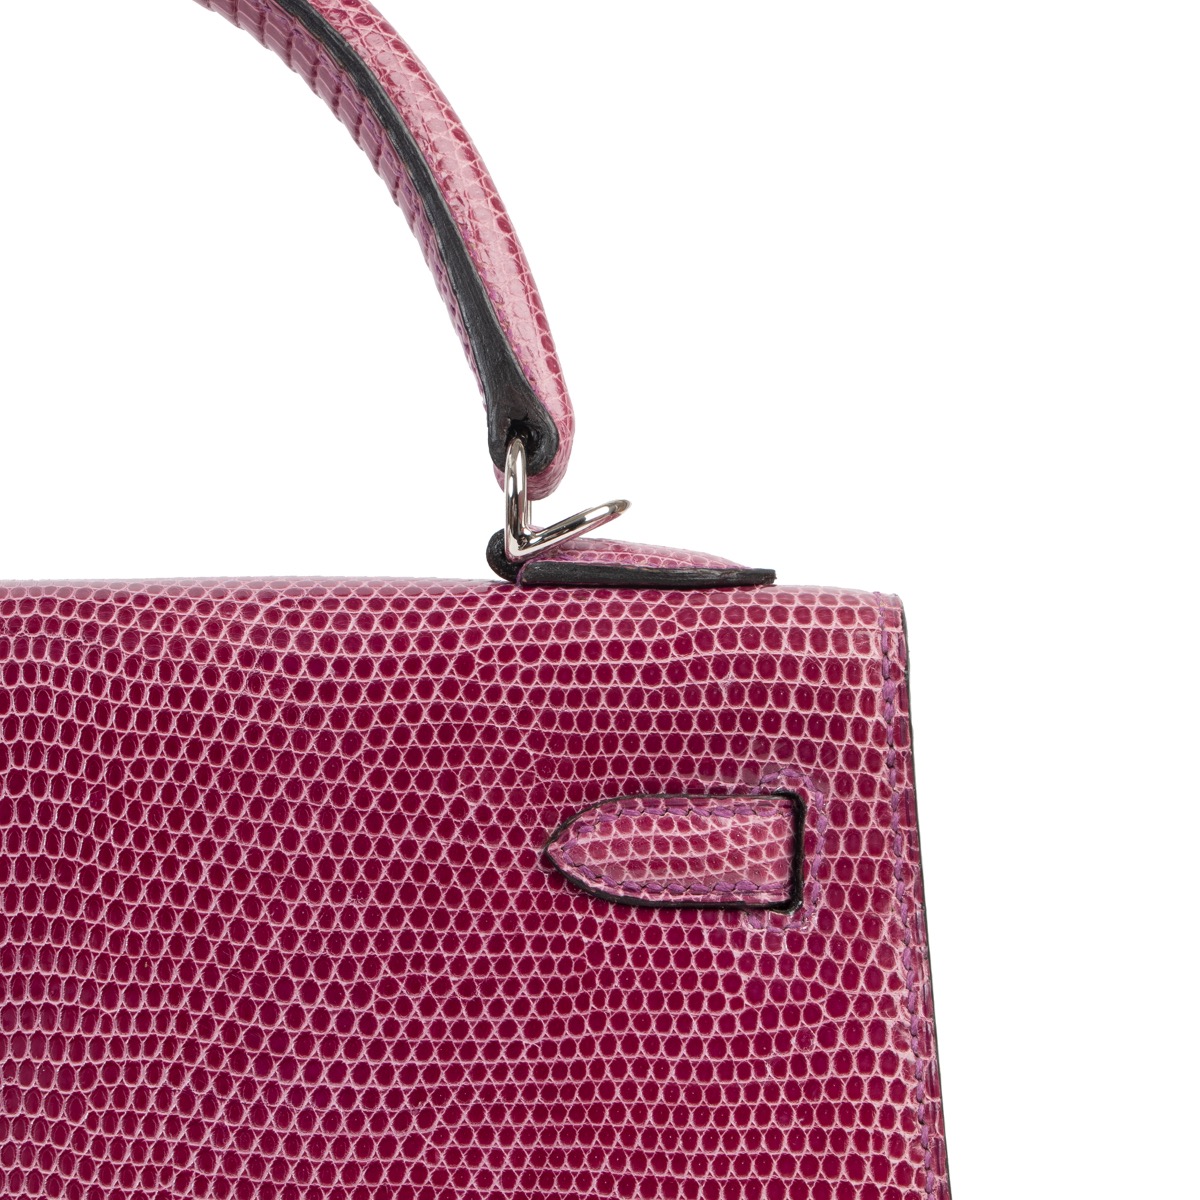 Hermès Kelly 25 Sellier Lizard Violet Top Handle Bag, Purple in